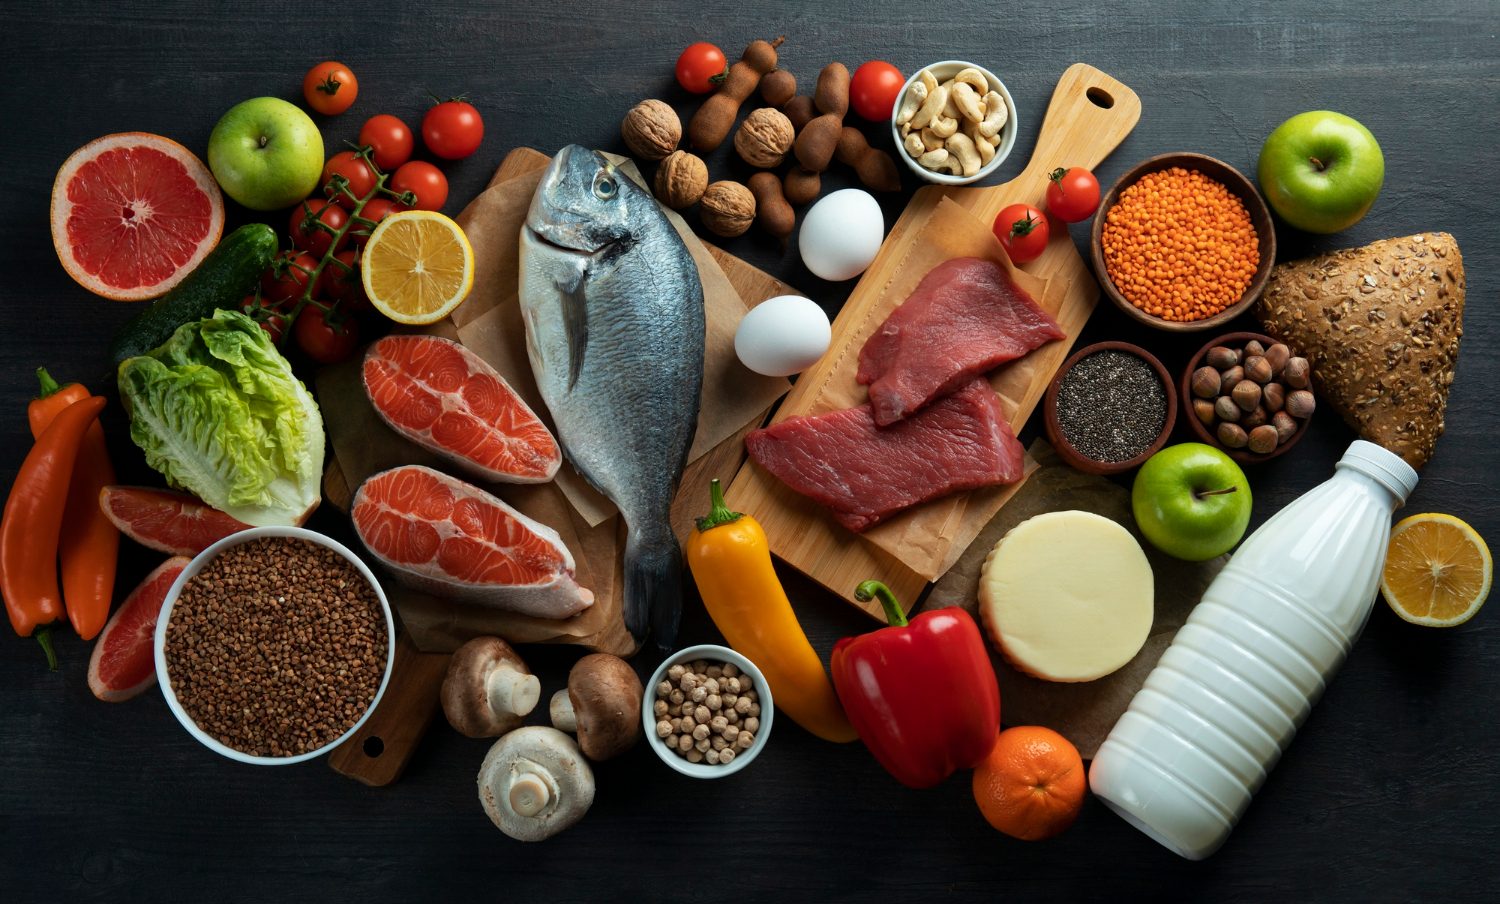 fuentes de proteína 9 alimentos que estimulan el cerebro / vista / vitamina / rostro / bajar de peso / vitamina b12 / dolor de rodillas / bienes